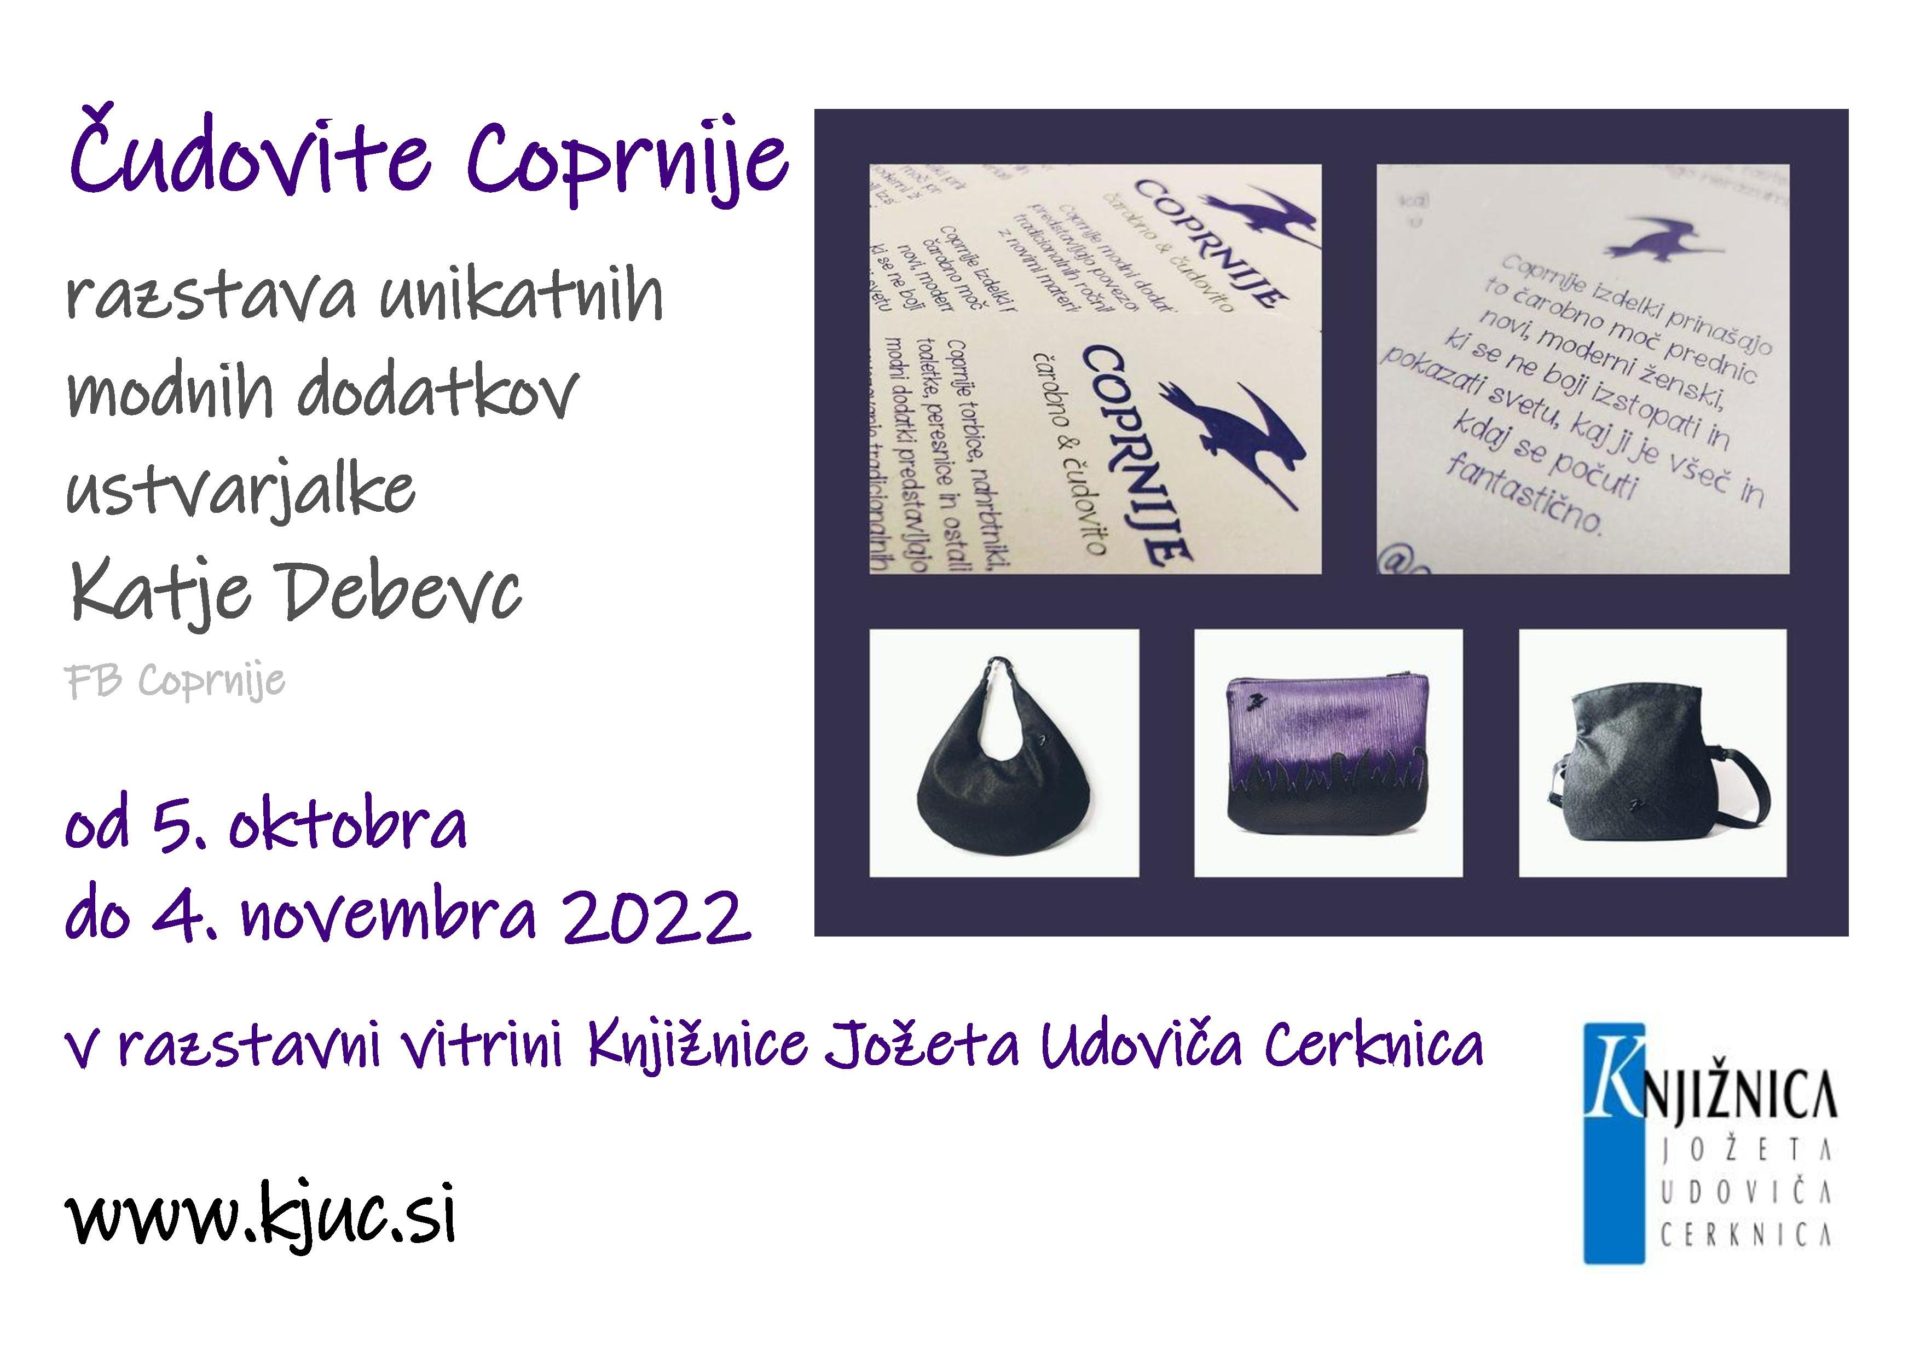 Cudovite Coprnije page 001 - Čudovite Coprnije - razstava unikatnih modnih dodatkov ustvarjalke Katje Debevc